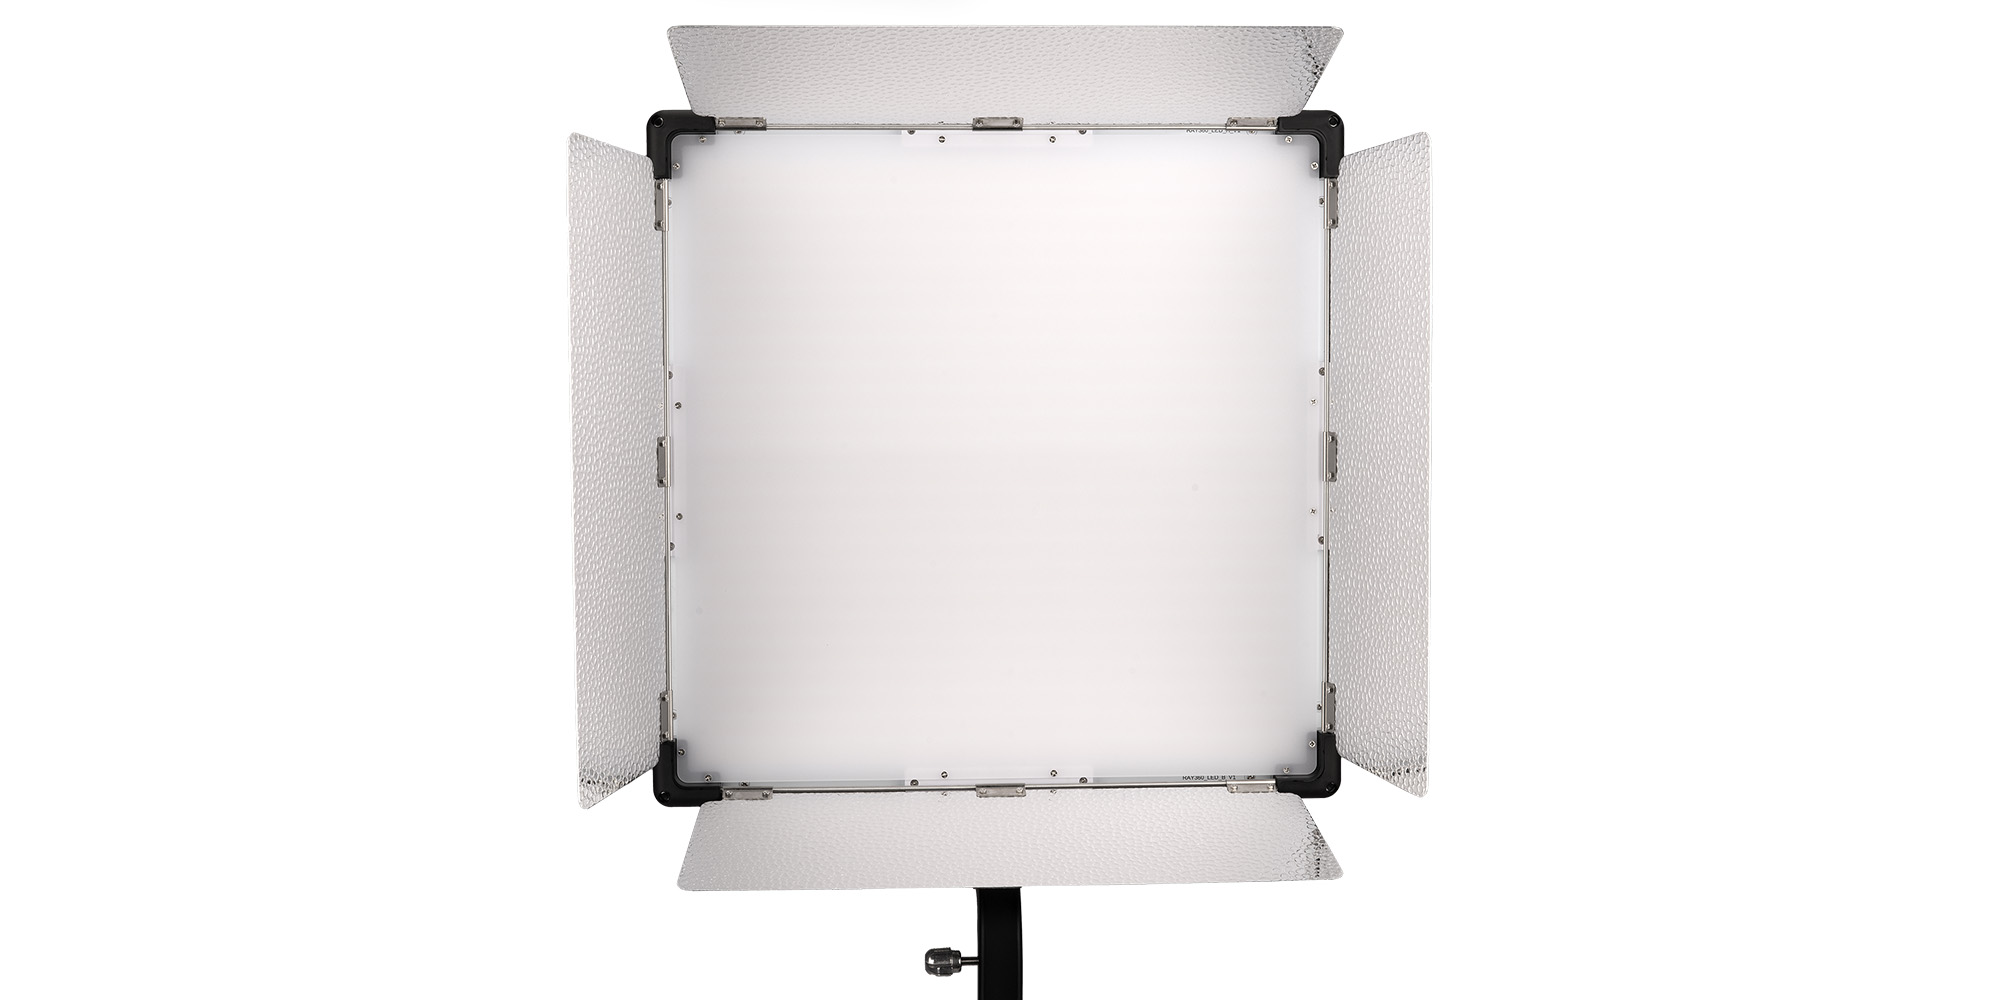 Lampa LED Yongnuo P360 Pro Max - RGB, WB (2000 K - 10000 K) - Duża moc